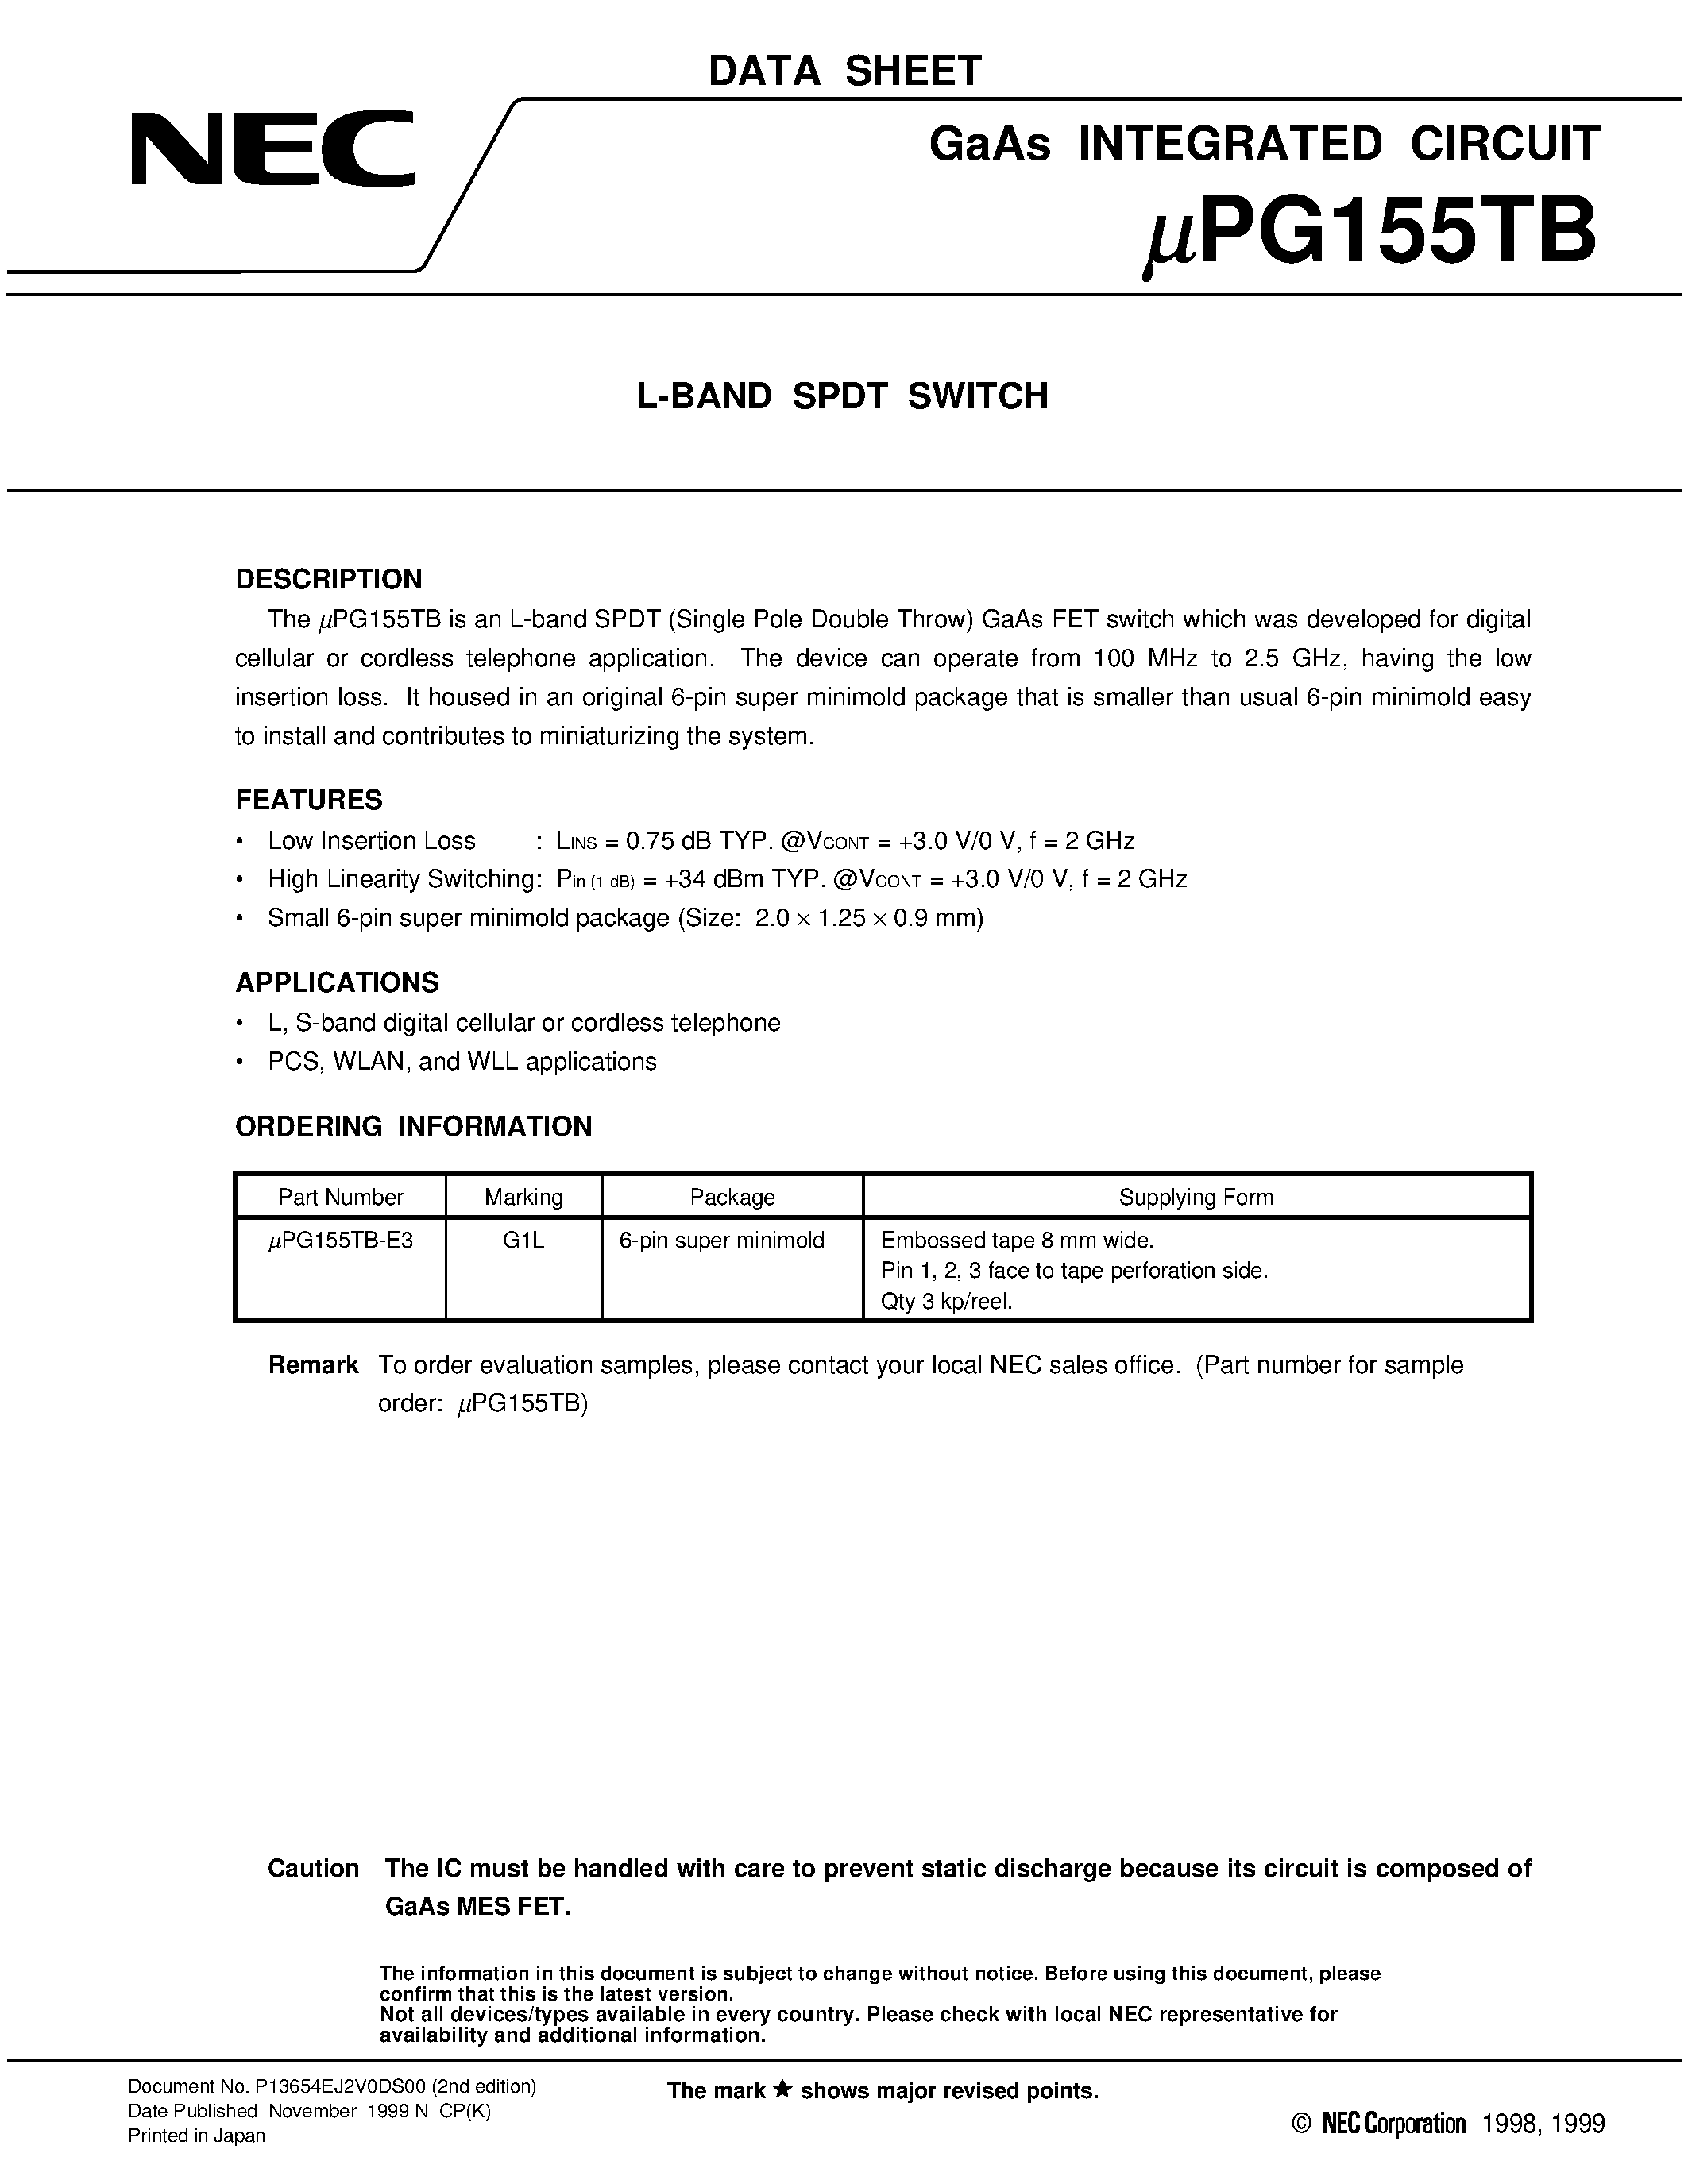 Даташит UPG155TB-E3 - L-BAND SPDT SWITCH страница 1